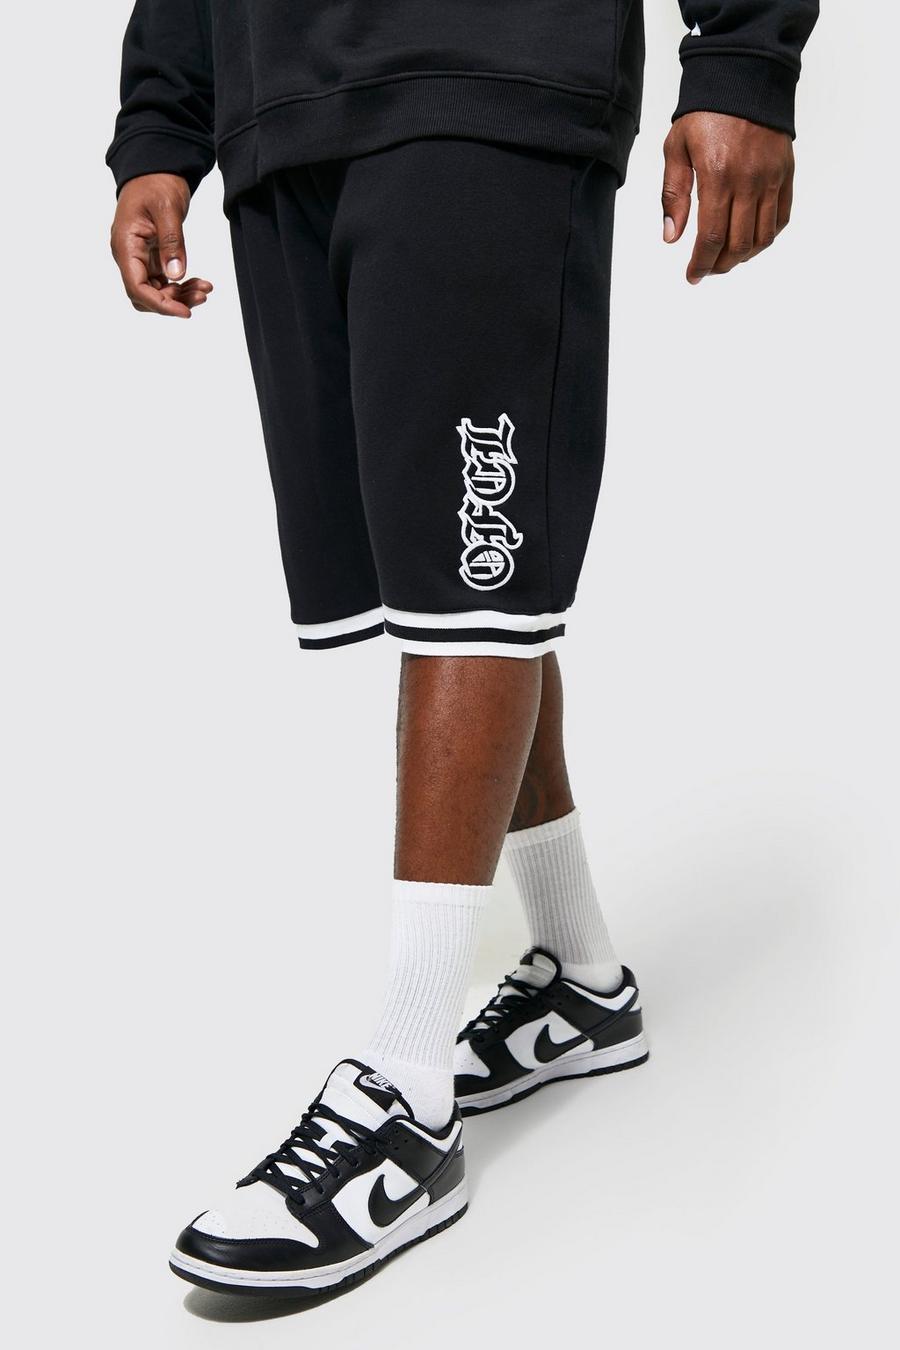 שחור negro שורט כדורסל עם אפליקציה בסגנון נבחרת ספורט מסדרת Ofcl, מידות גדולות